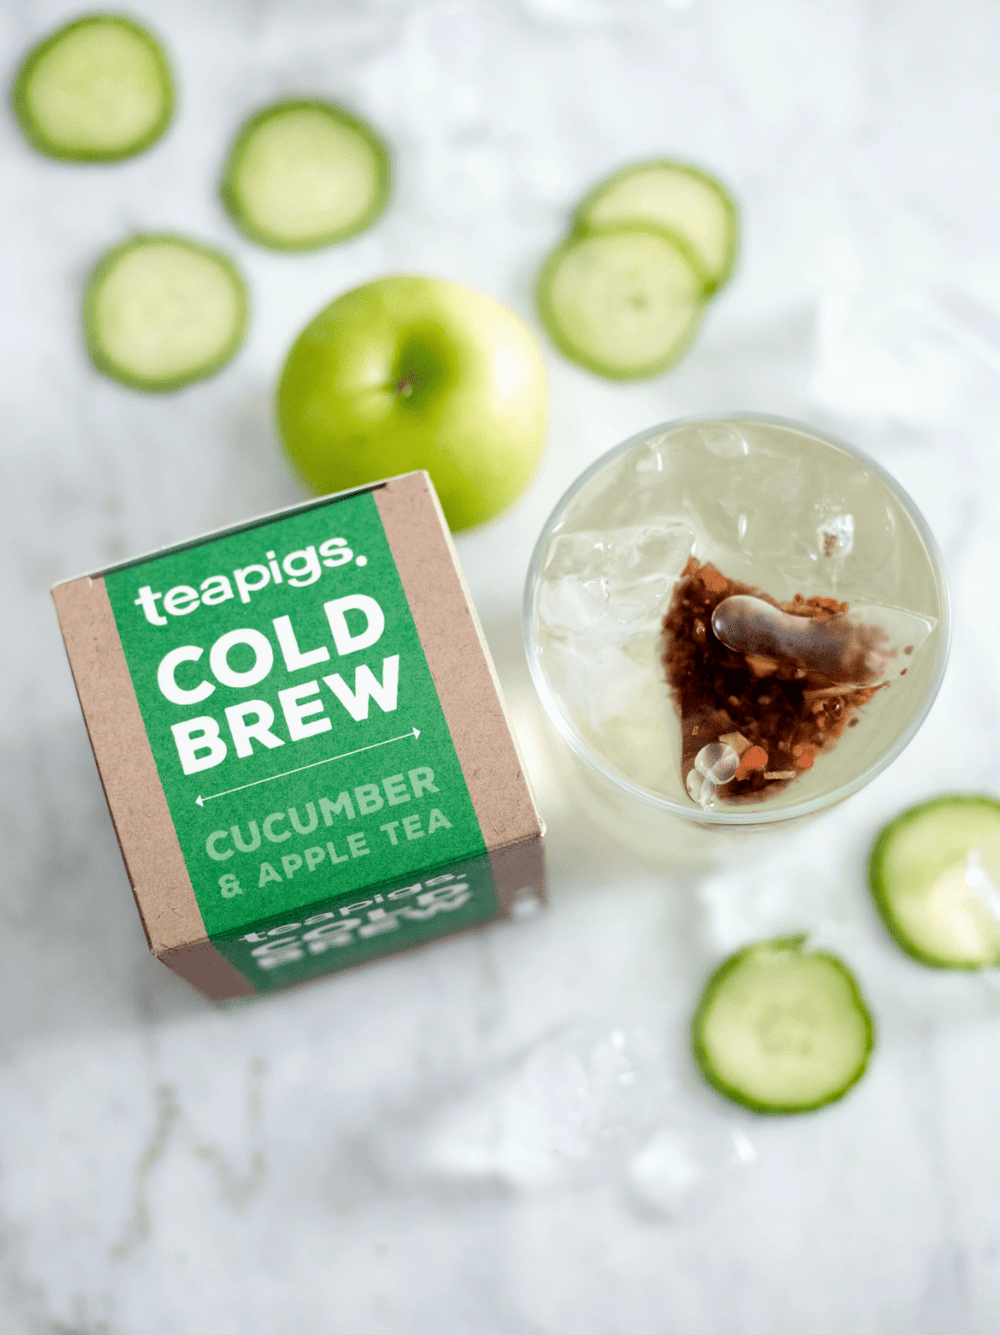 teapigs Tea Cucumber & Apple Cold Brew